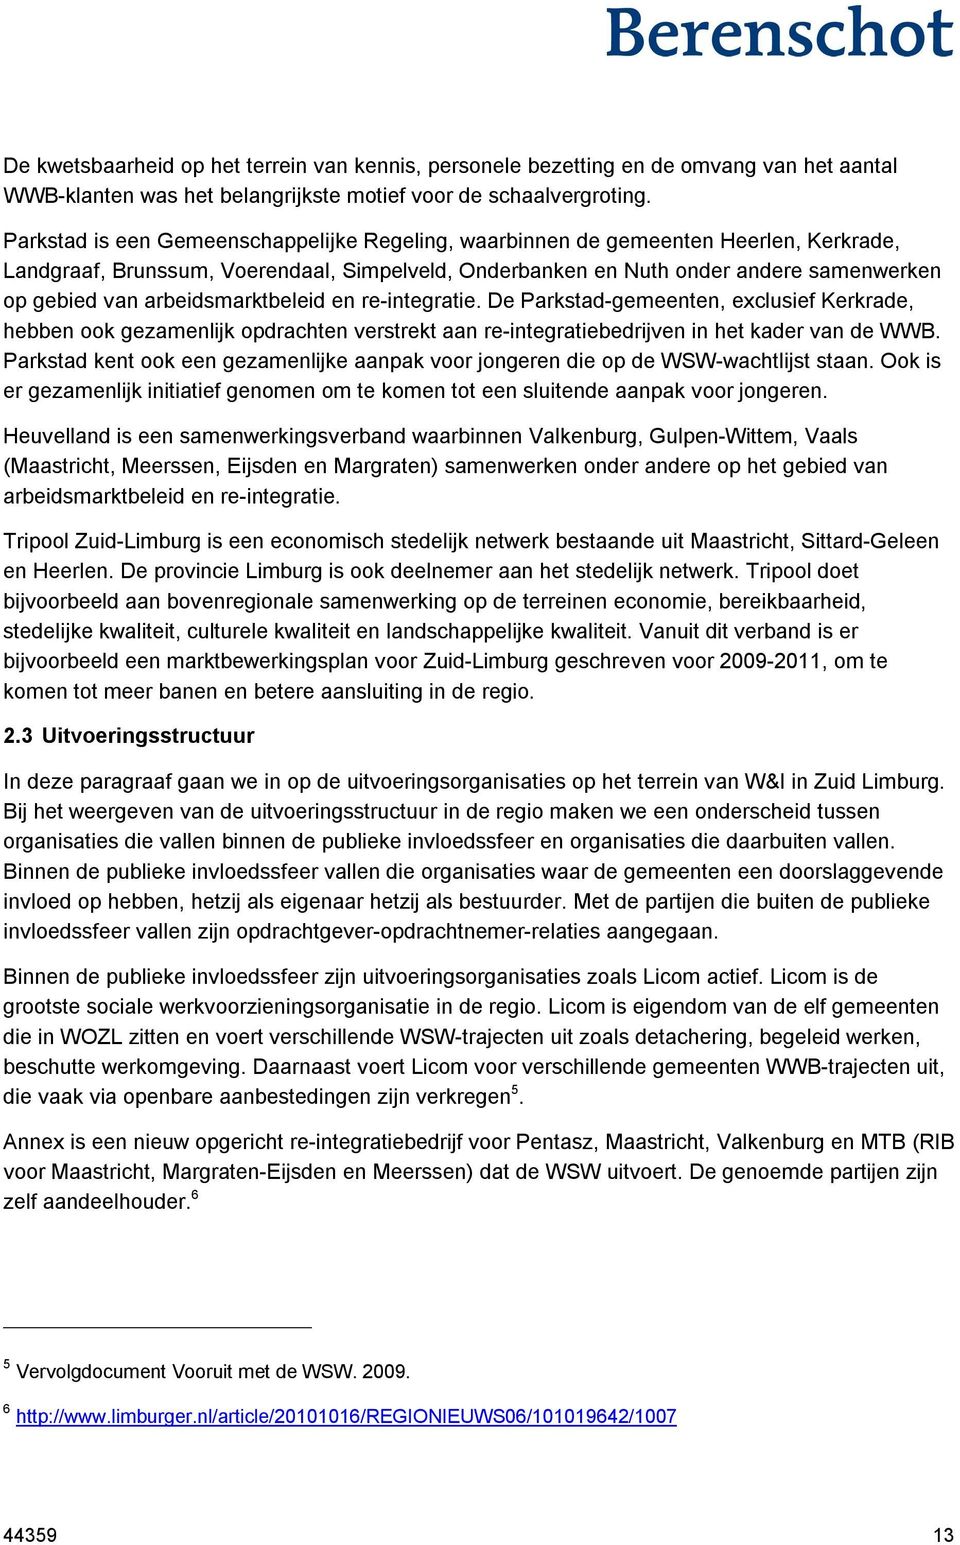 arbeidsmarktbeleid en re-integratie. De Parkstad-gemeenten, exclusief Kerkrade, hebben ook gezamenlijk opdrachten verstrekt aan re-integratiebedrijven in het kader van de WWB.